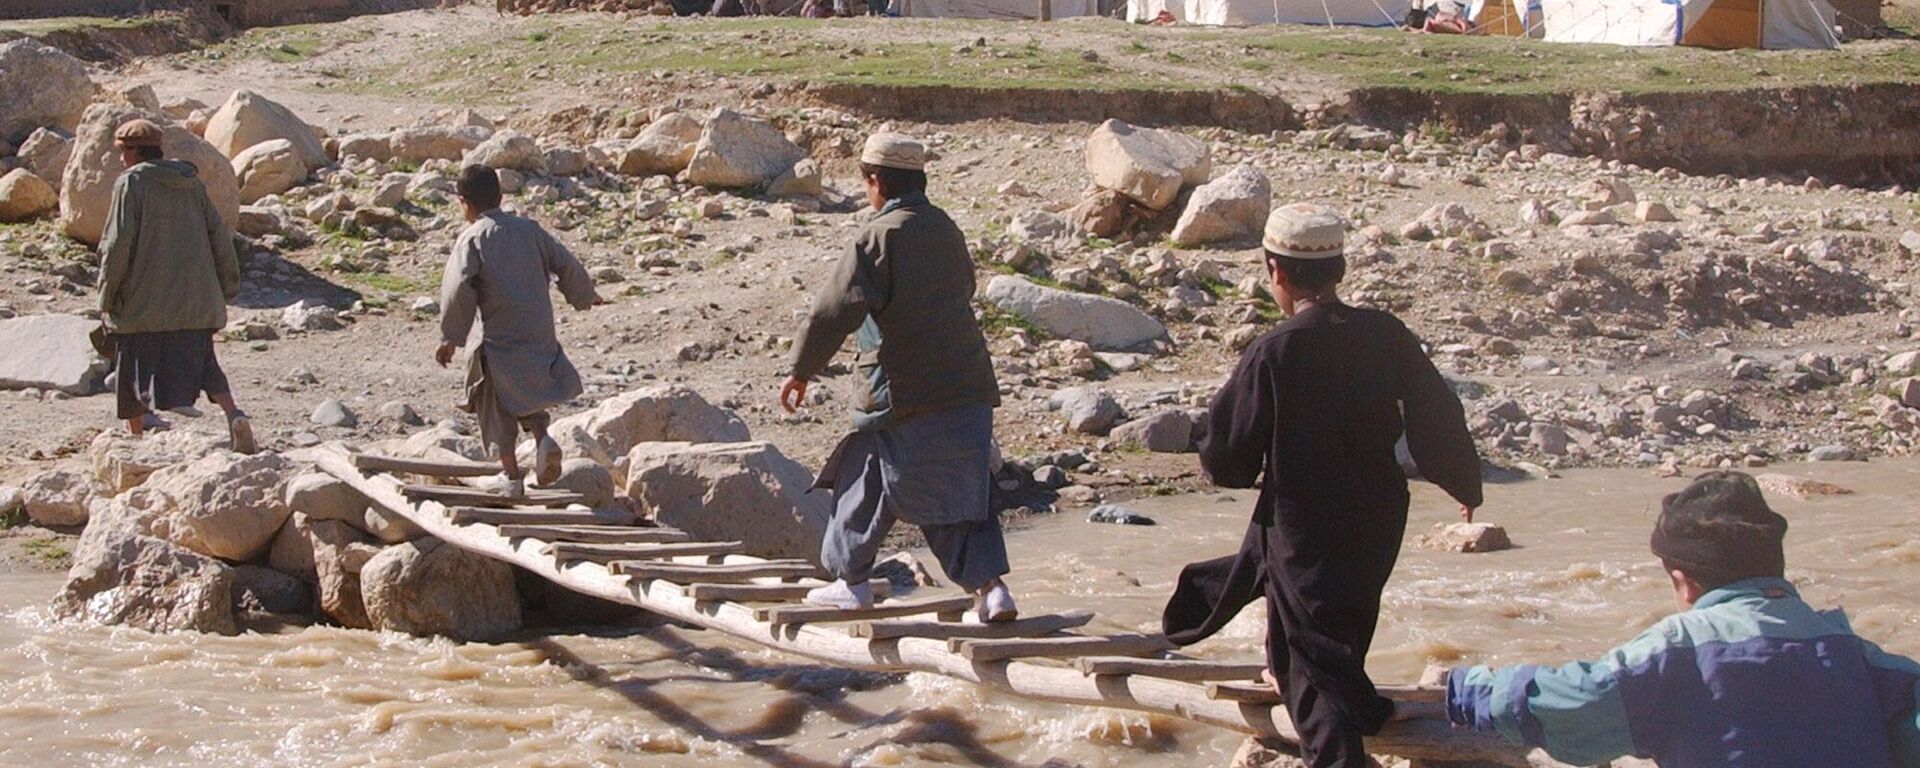 Дети в Афганистане бегут по самодельному мосту после землетрясения, архифное фото - Sputnik Тоҷикистон, 1920, 27.03.2023